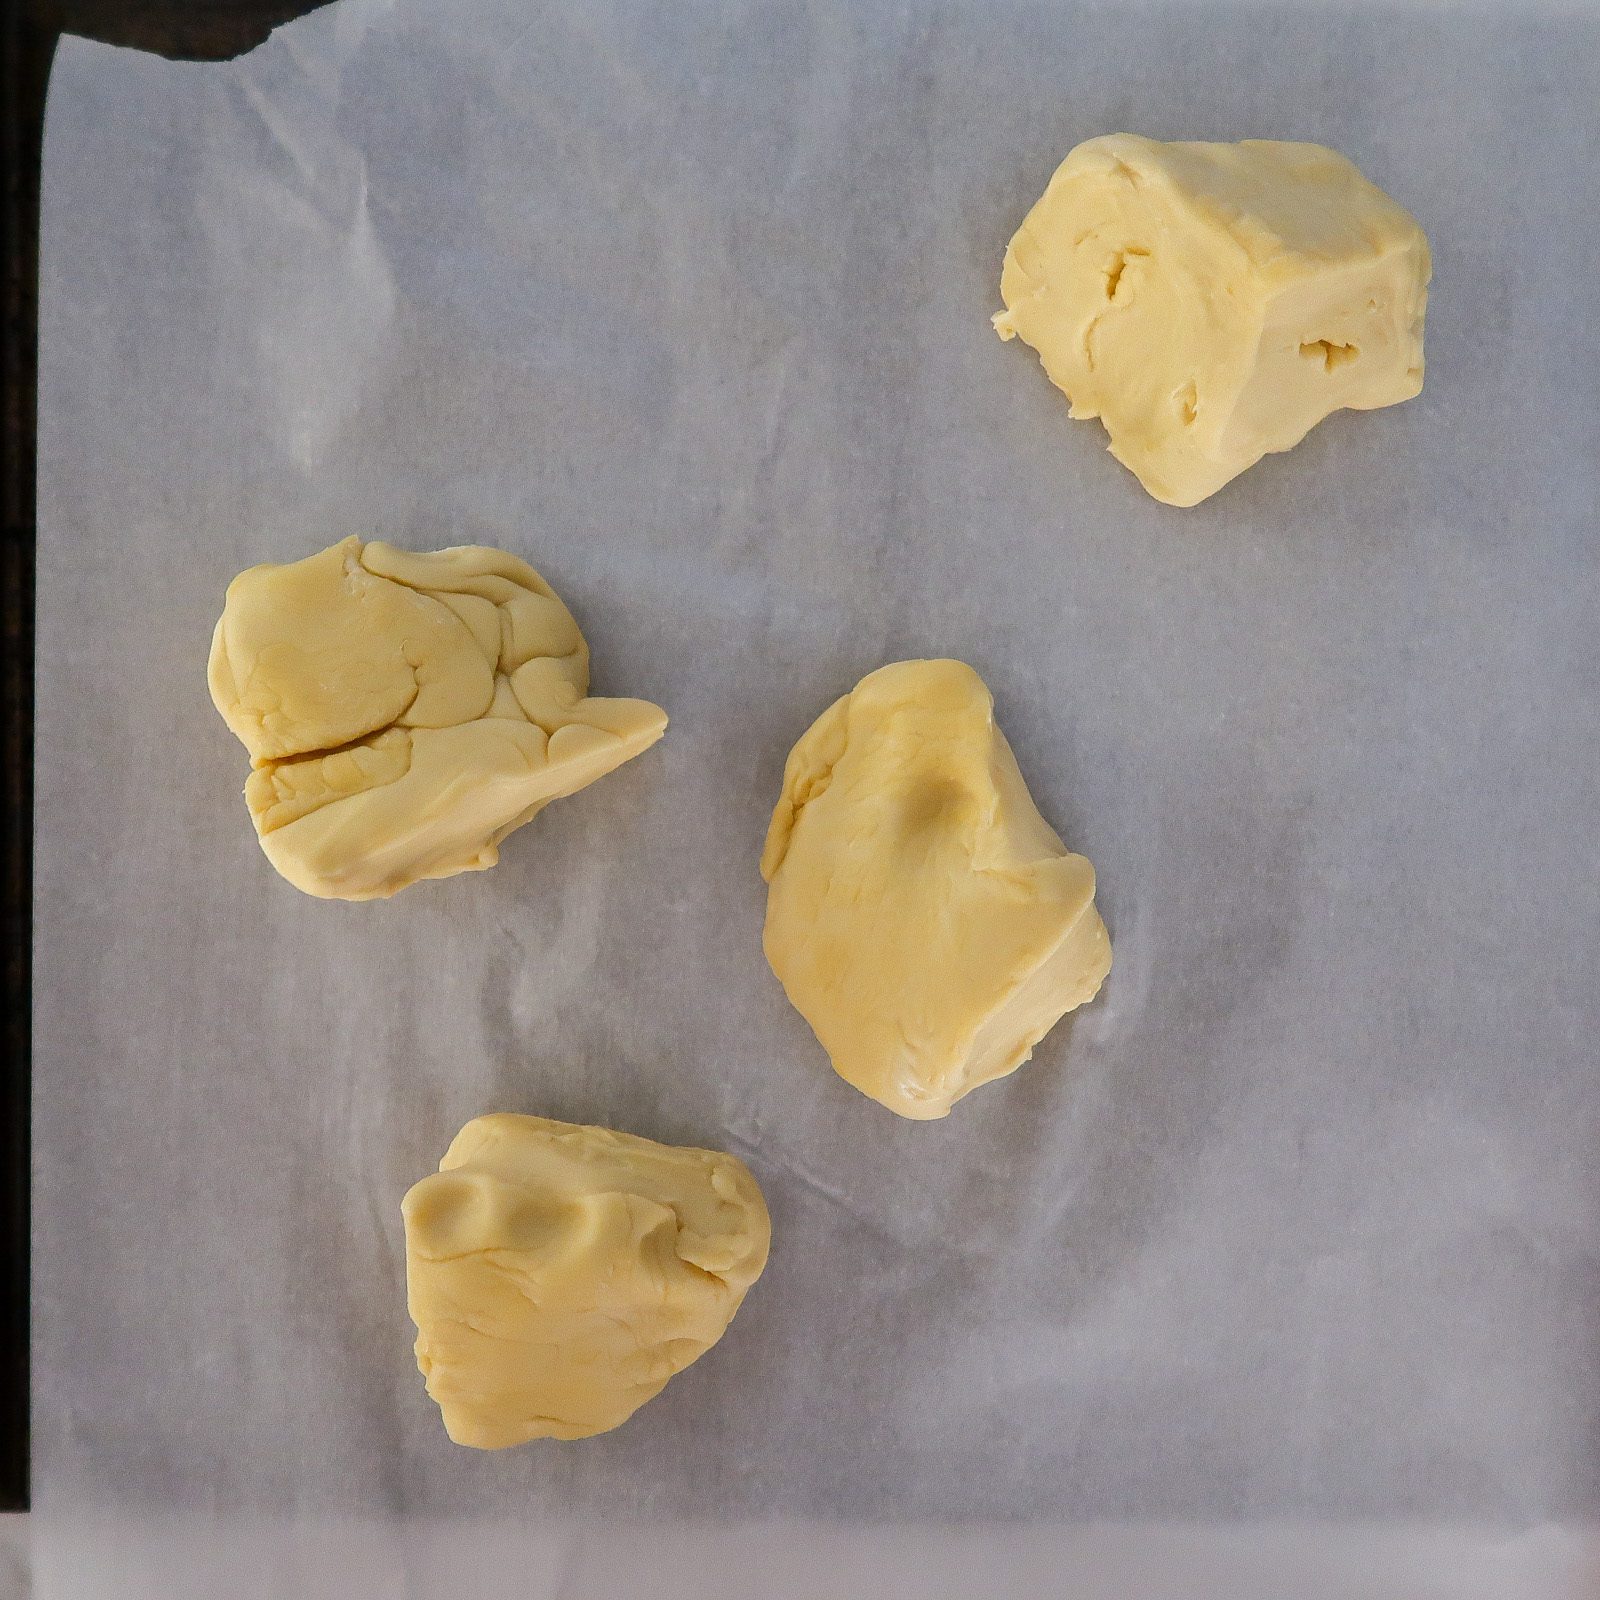 dough bread ball cut into 4 pieces